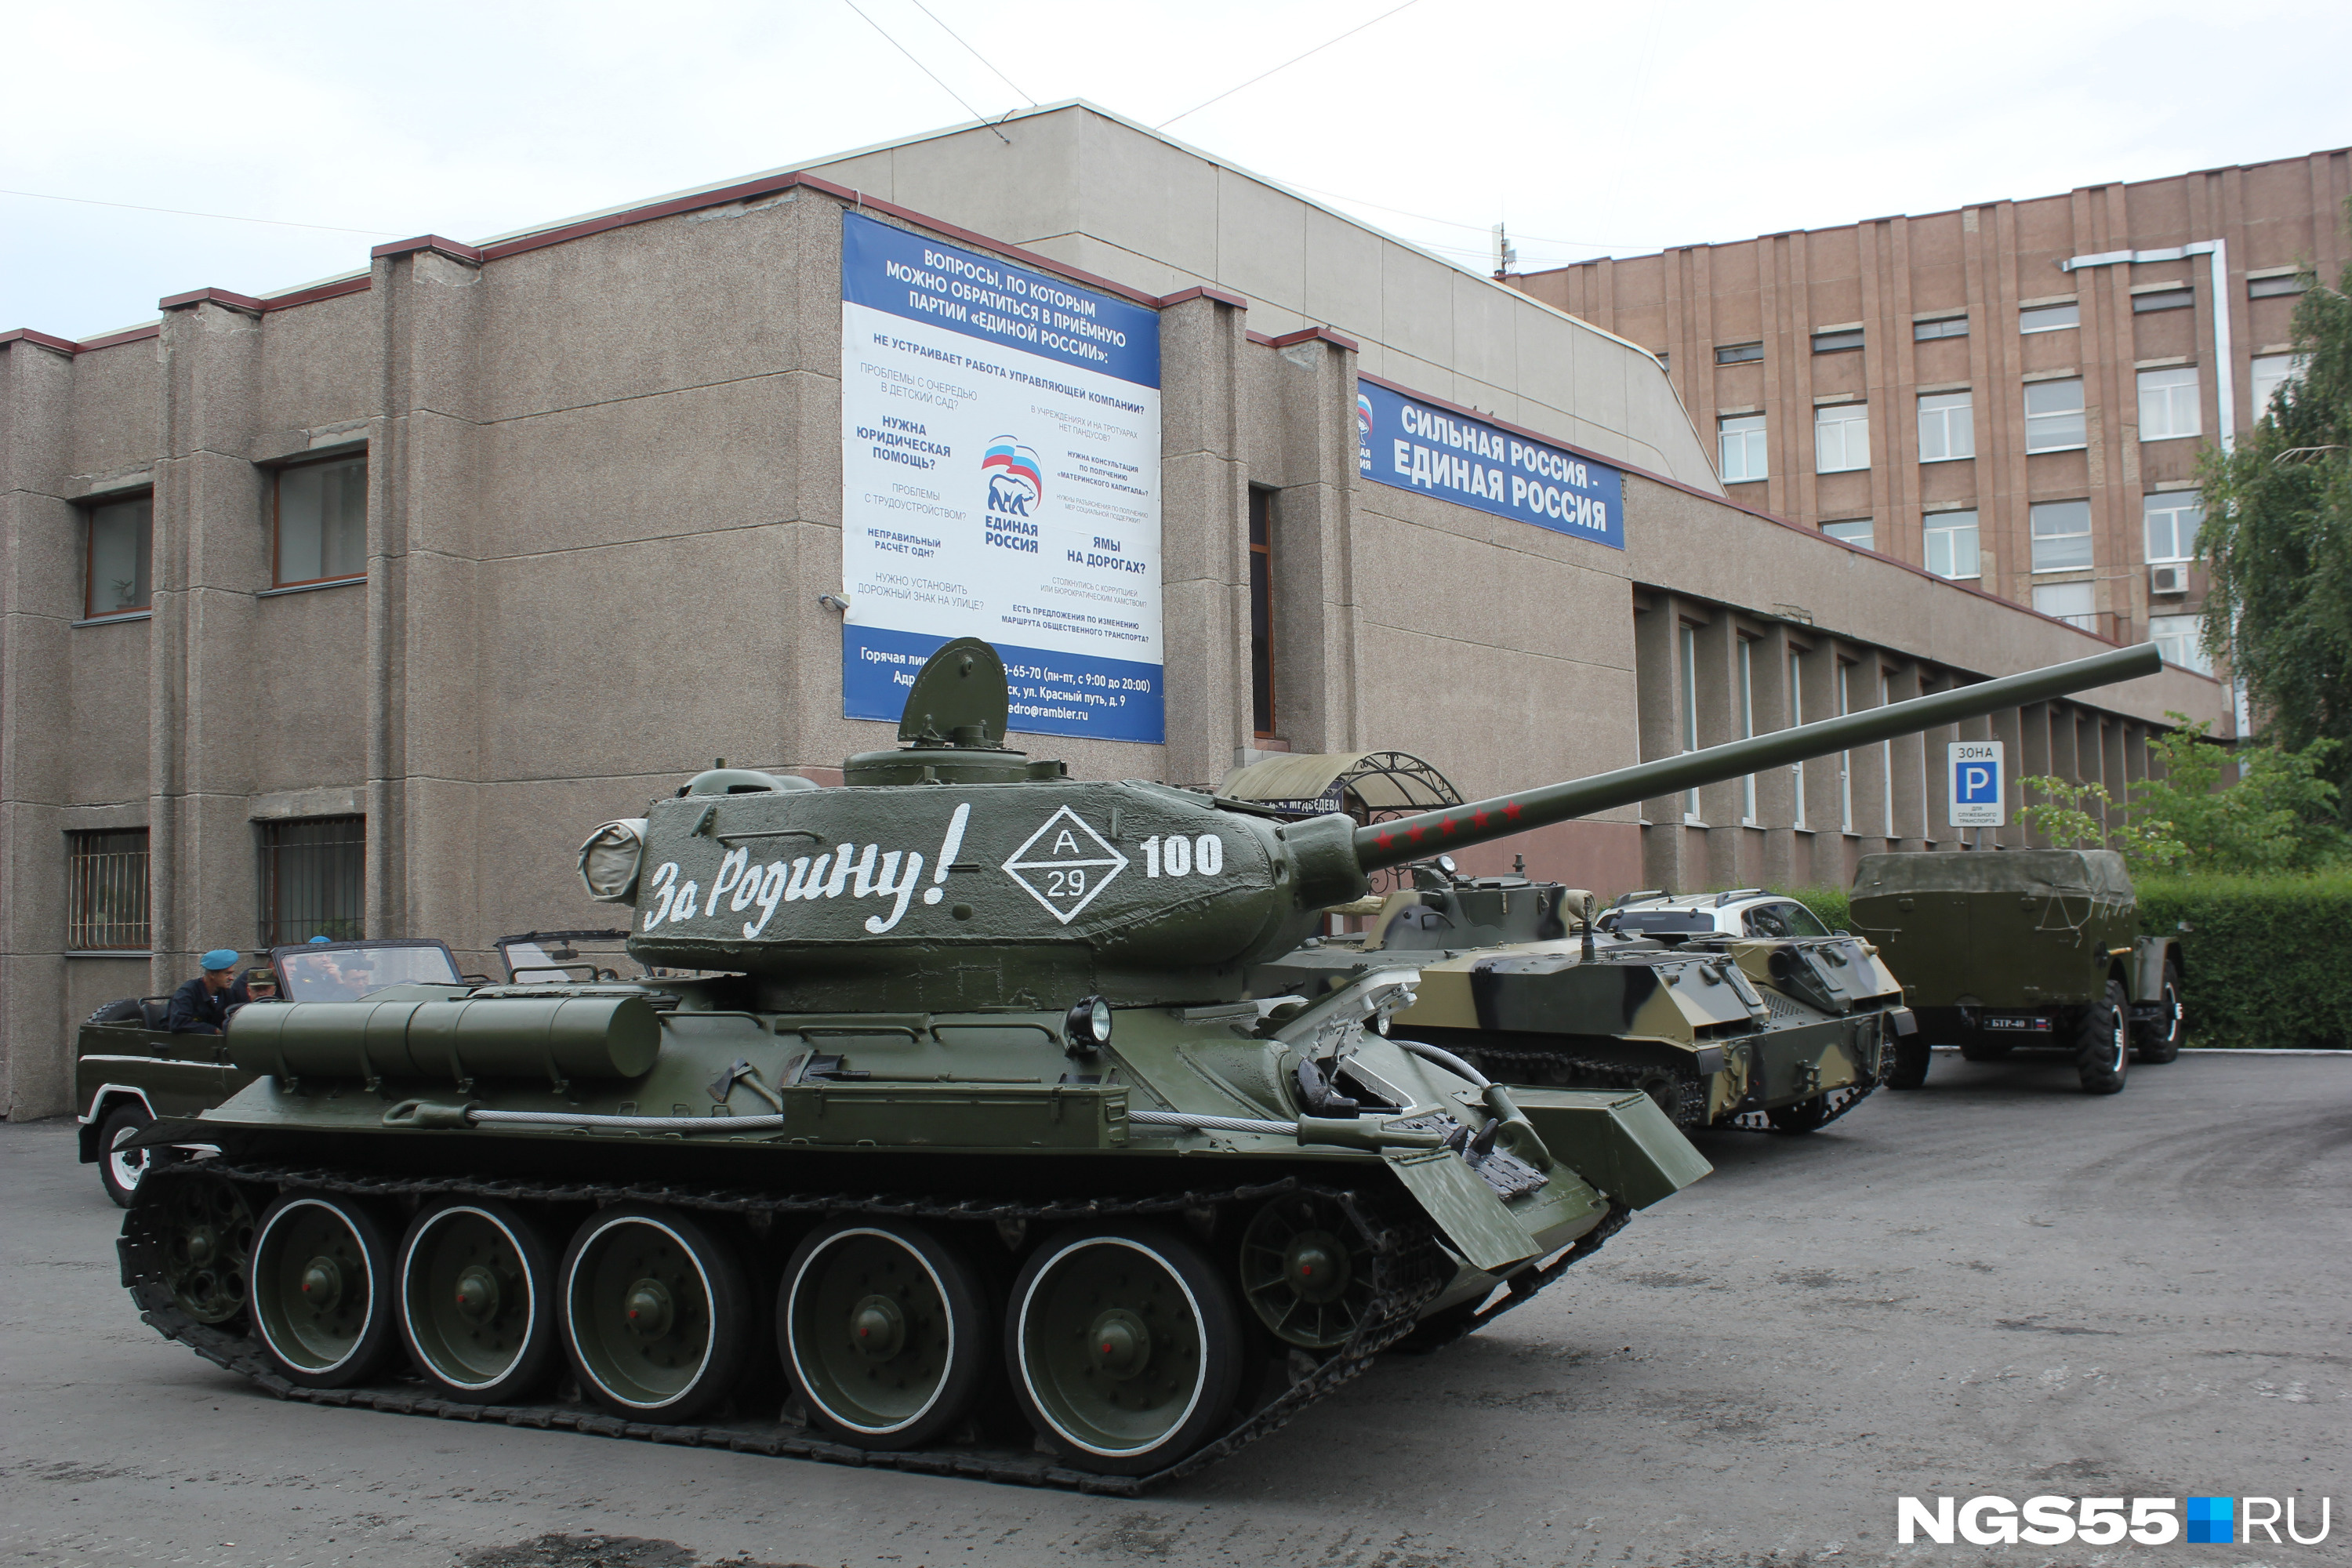 В этом году парад Победы впервые перенесли с 9 мая на 24 июня, но кое-что остаётся неизменным — танк Т-34 с надписью «За Родину!»